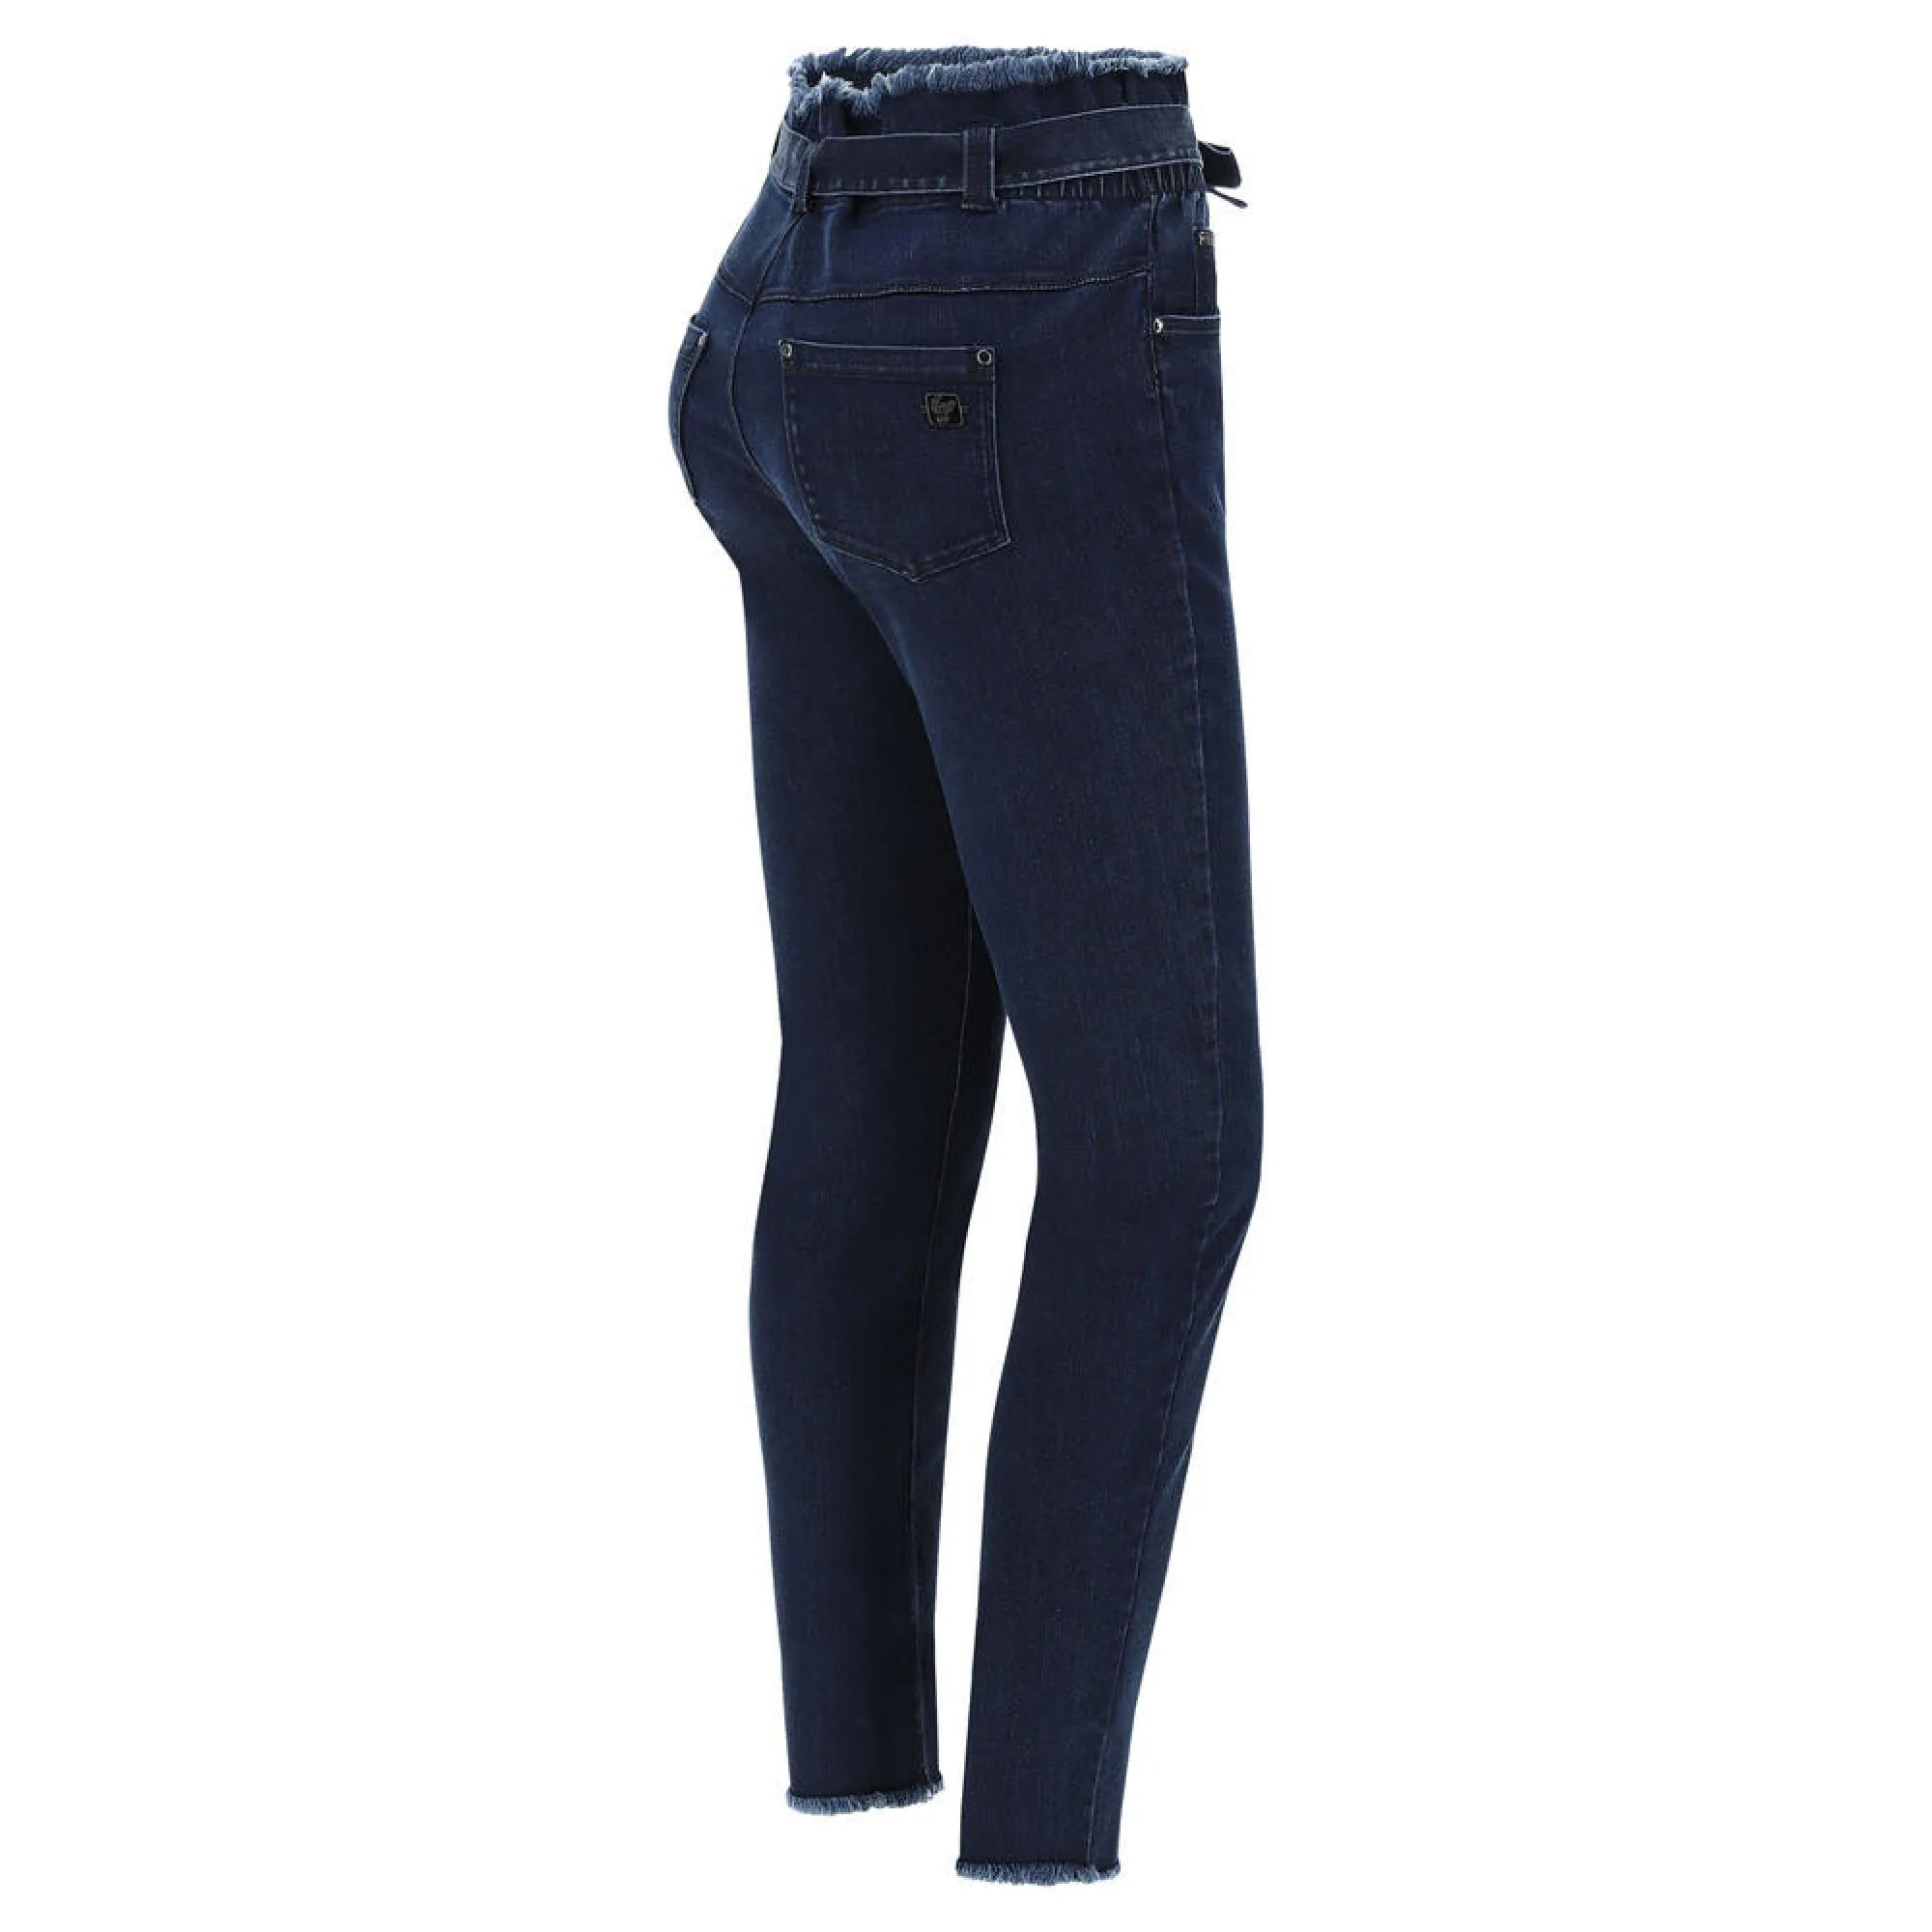 Fit jeans - Die preiswertesten Fit jeans analysiert!